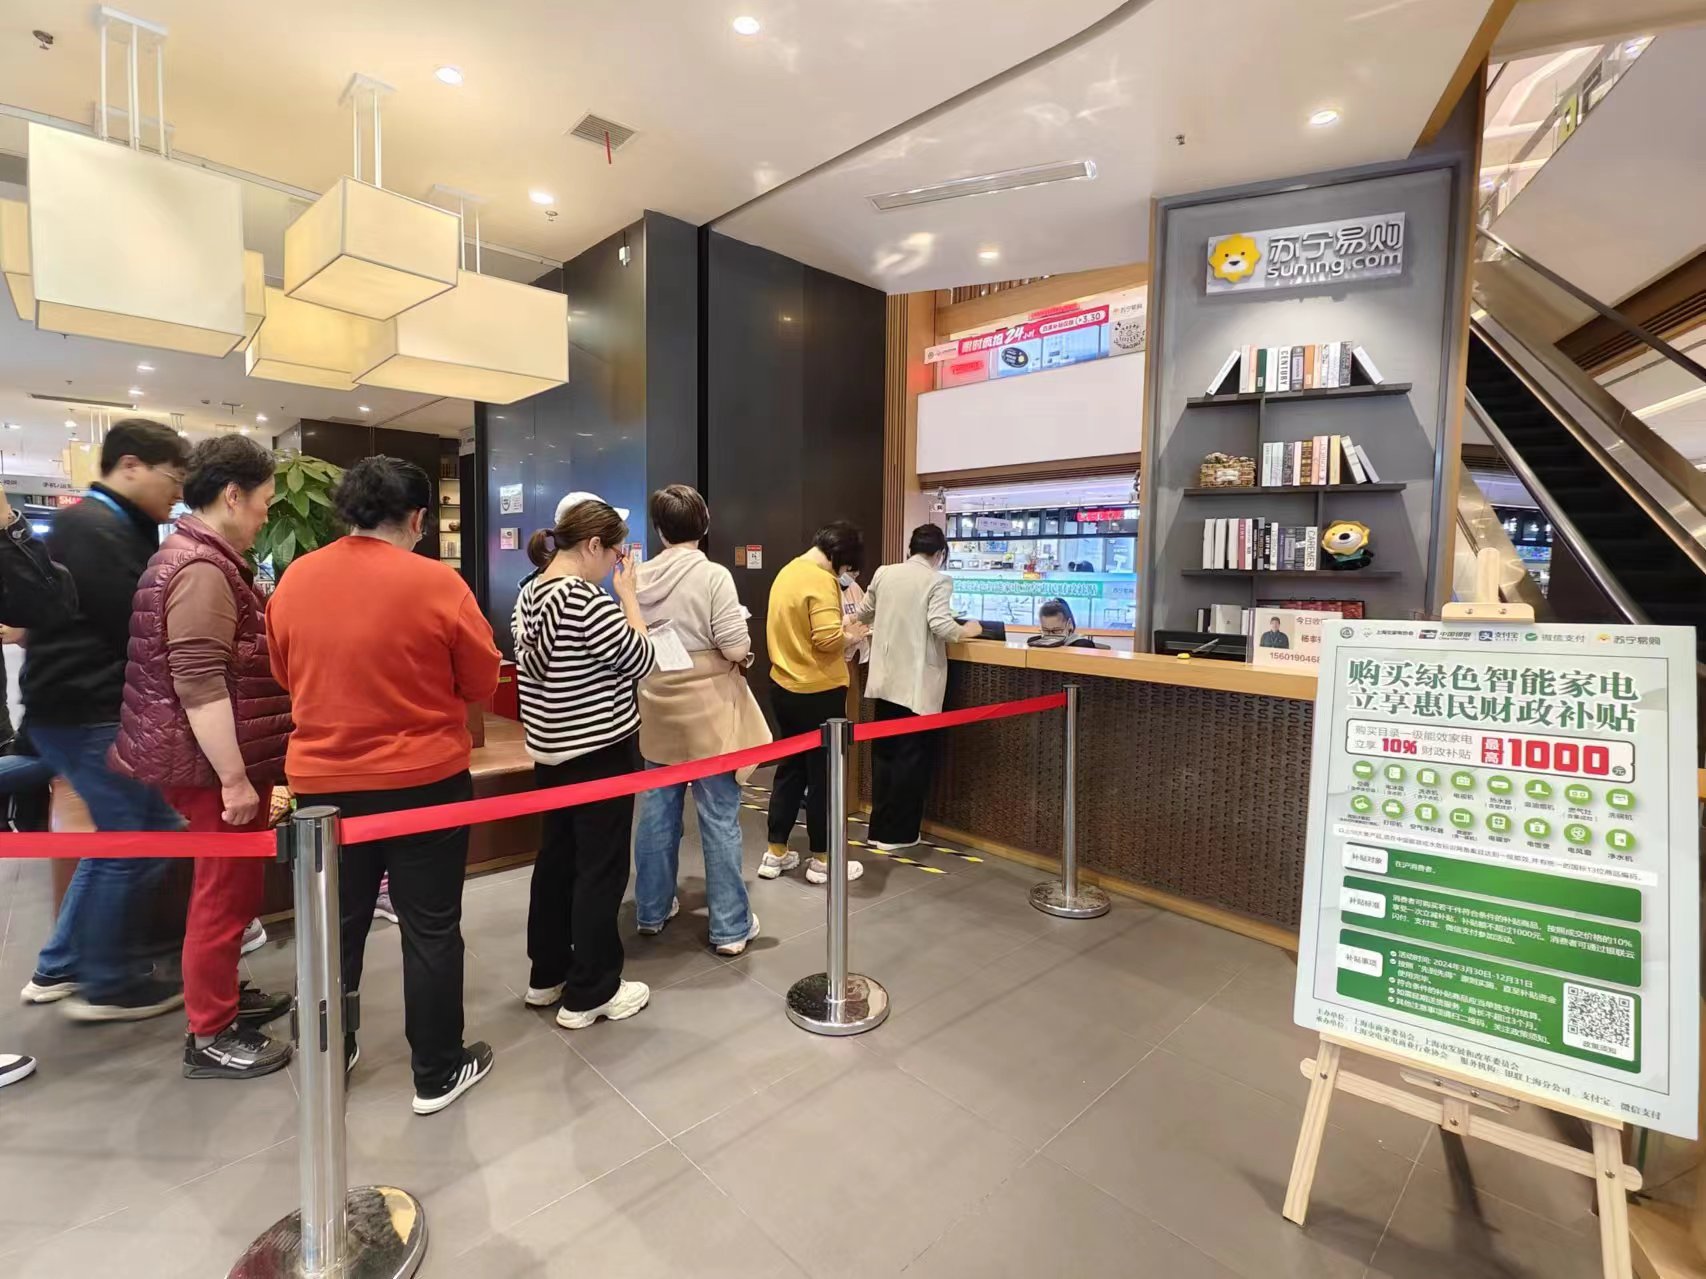 不少市民走进门店购买绿色智能家电。劳动报记者陆燕婷 摄影